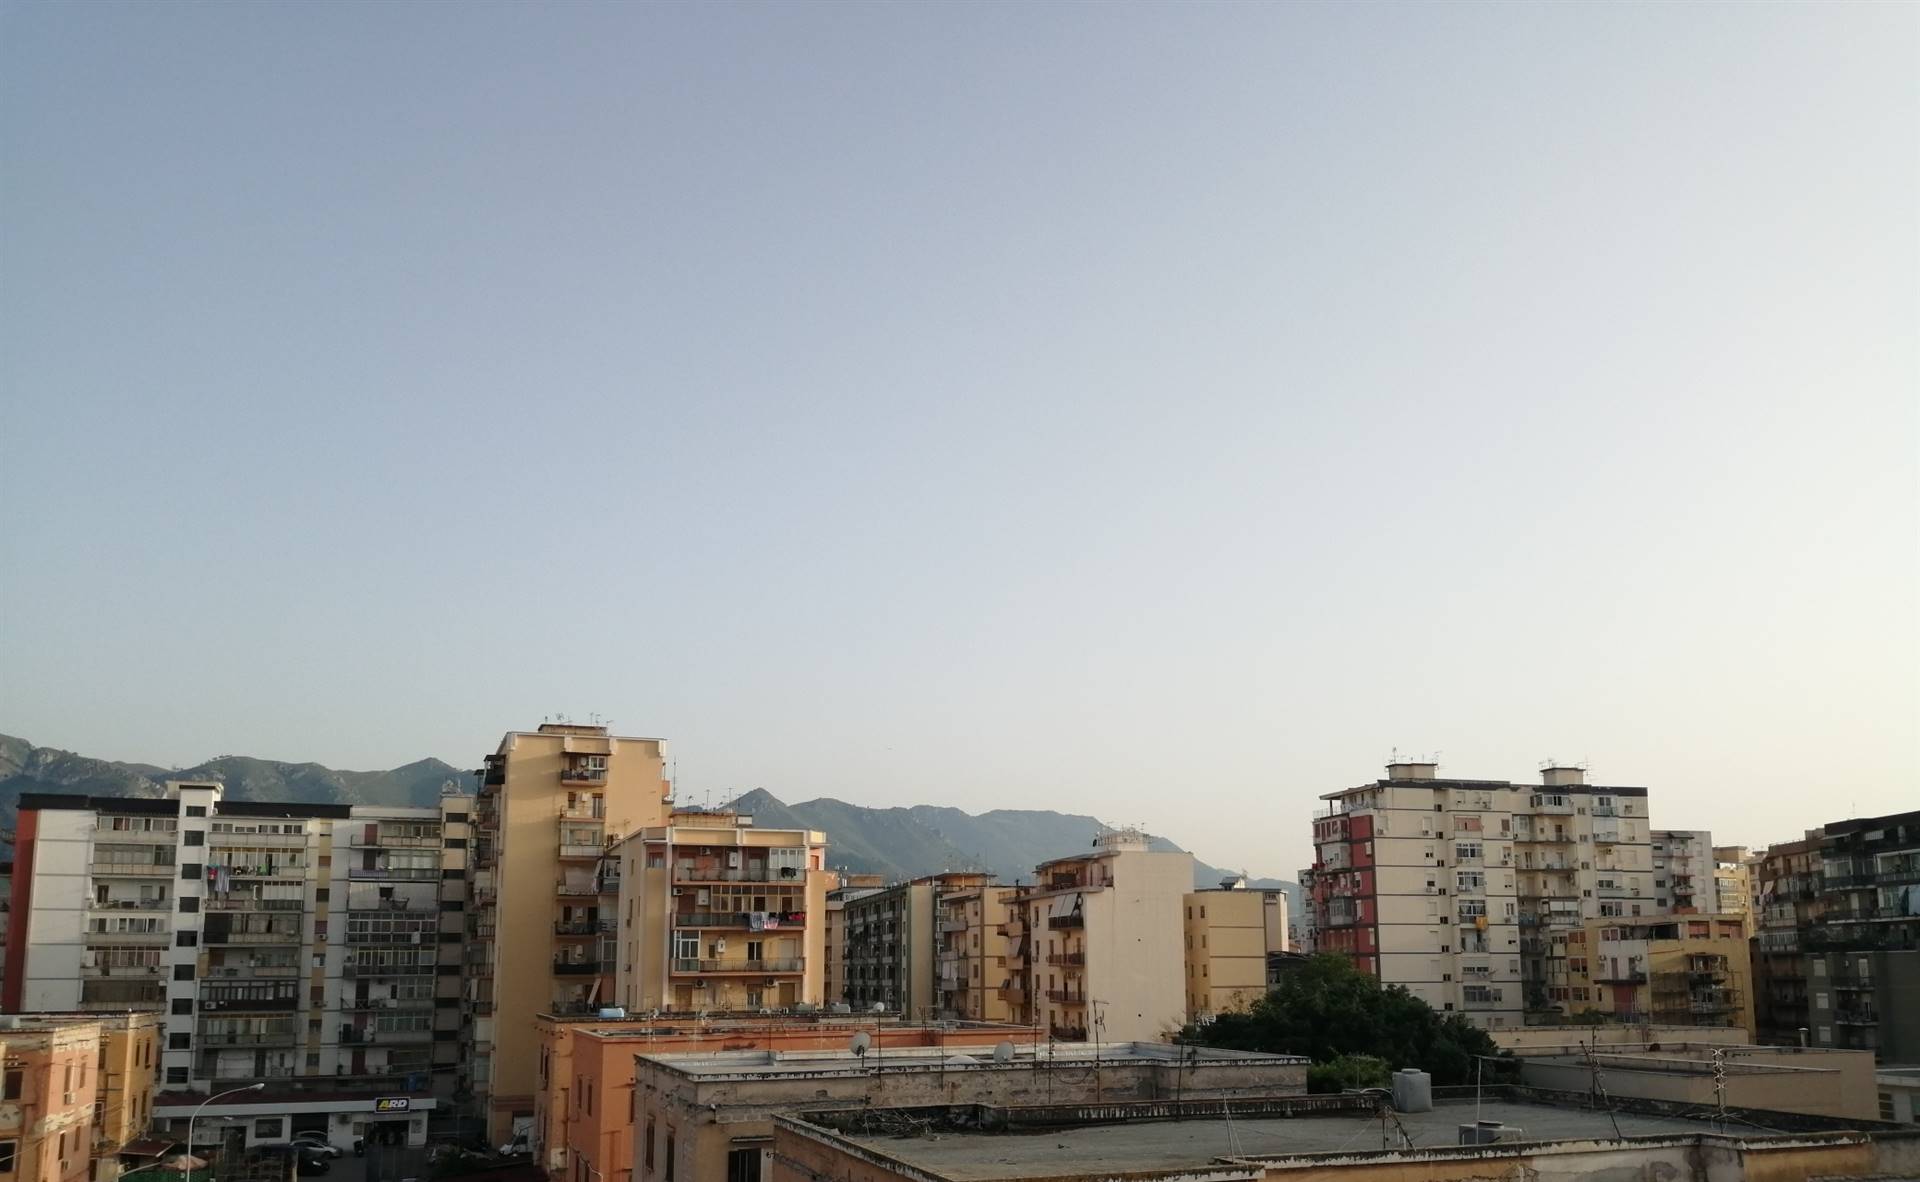 Trilocale in Via Scirè 4 in zona Civico a Palermo